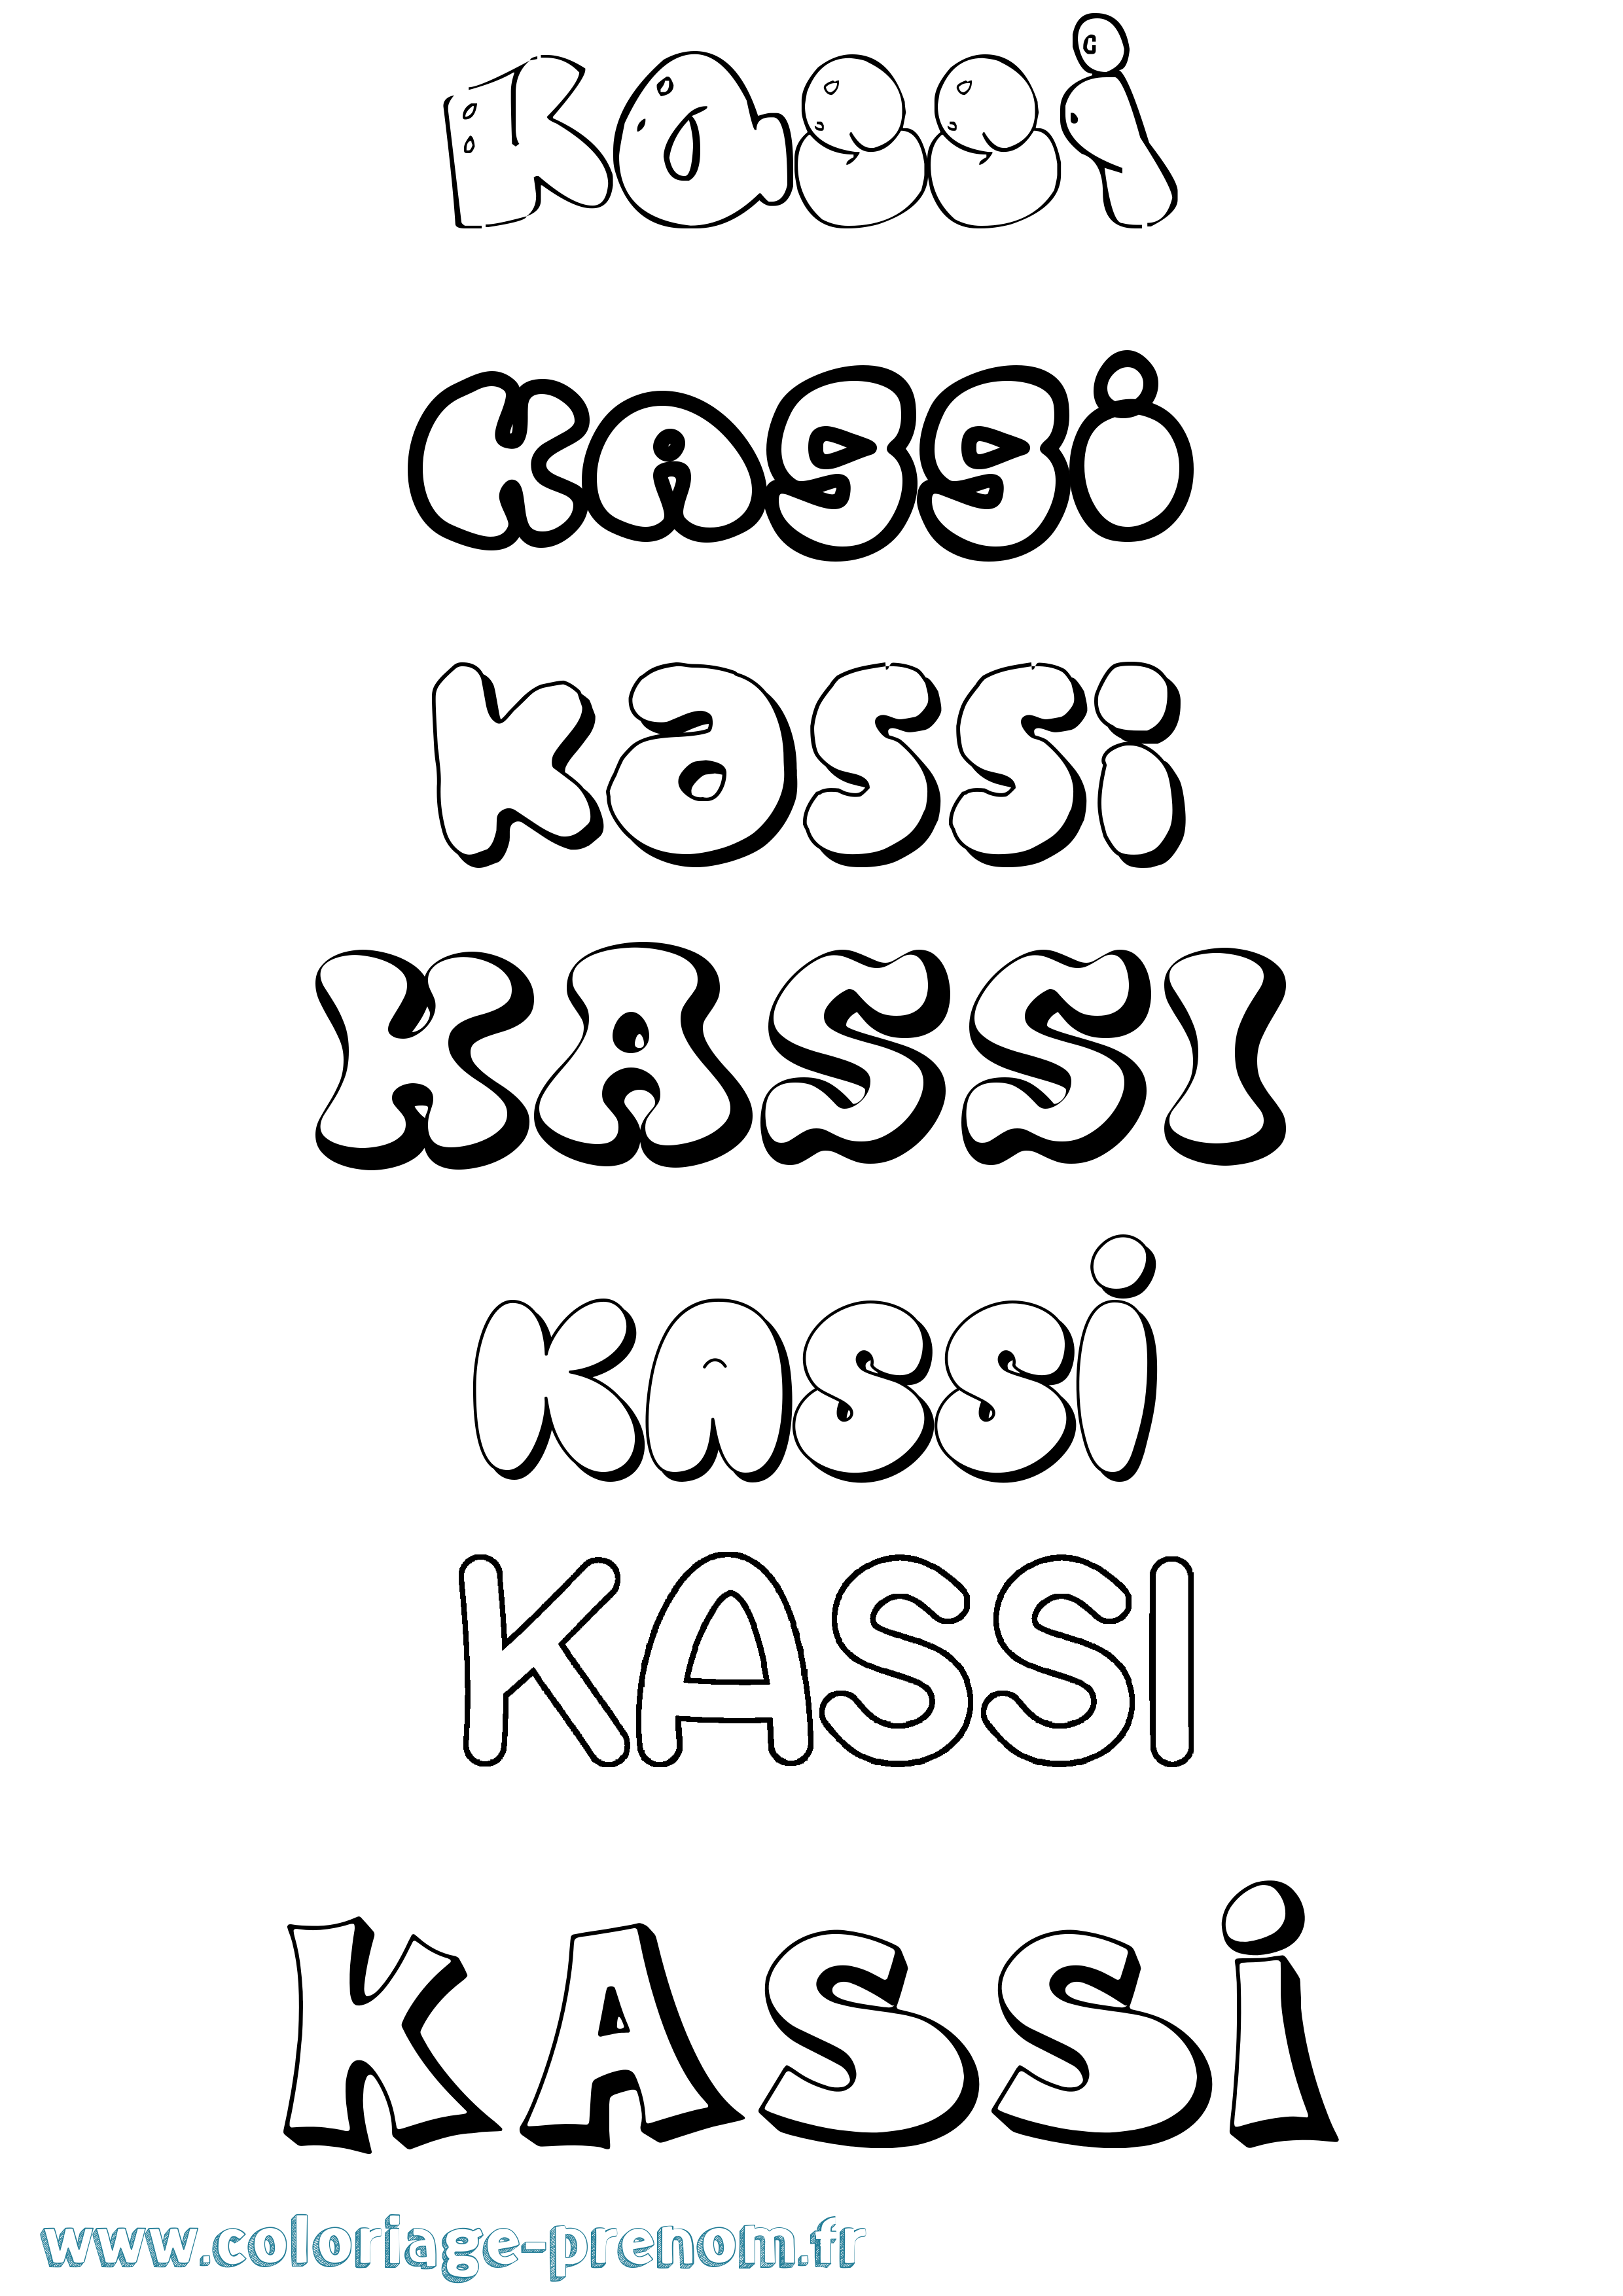 Coloriage prénom Kassi Bubble